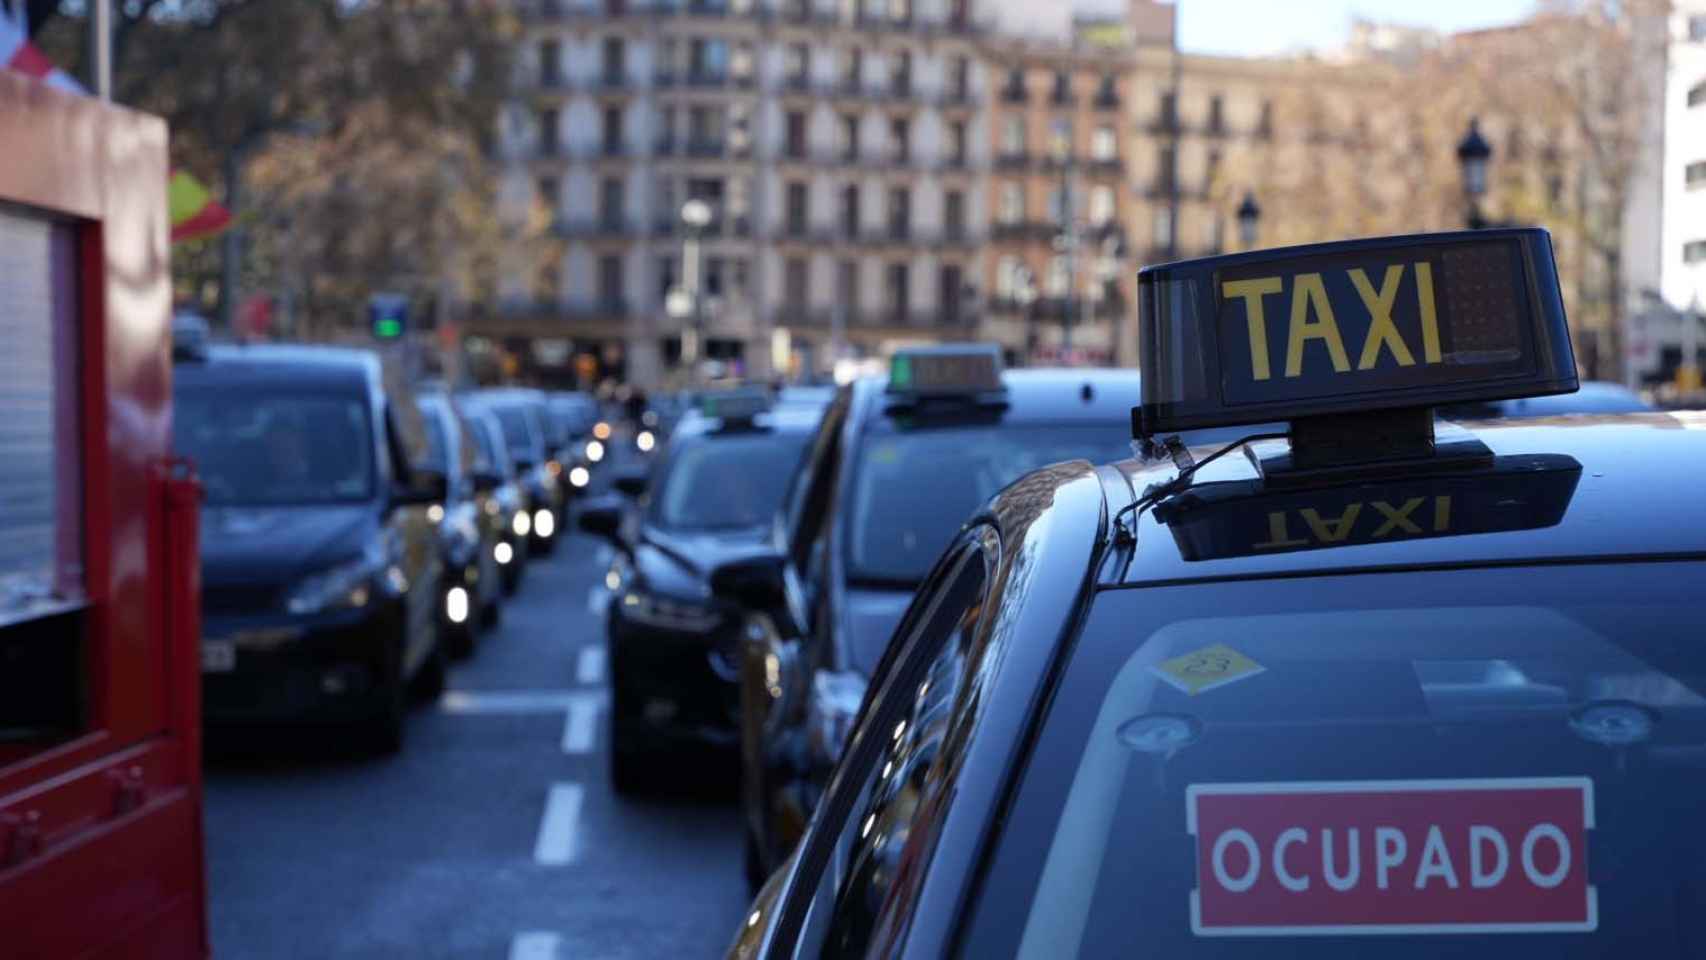 Taxis en Barcelona / Luis Miguel Añón (CG)